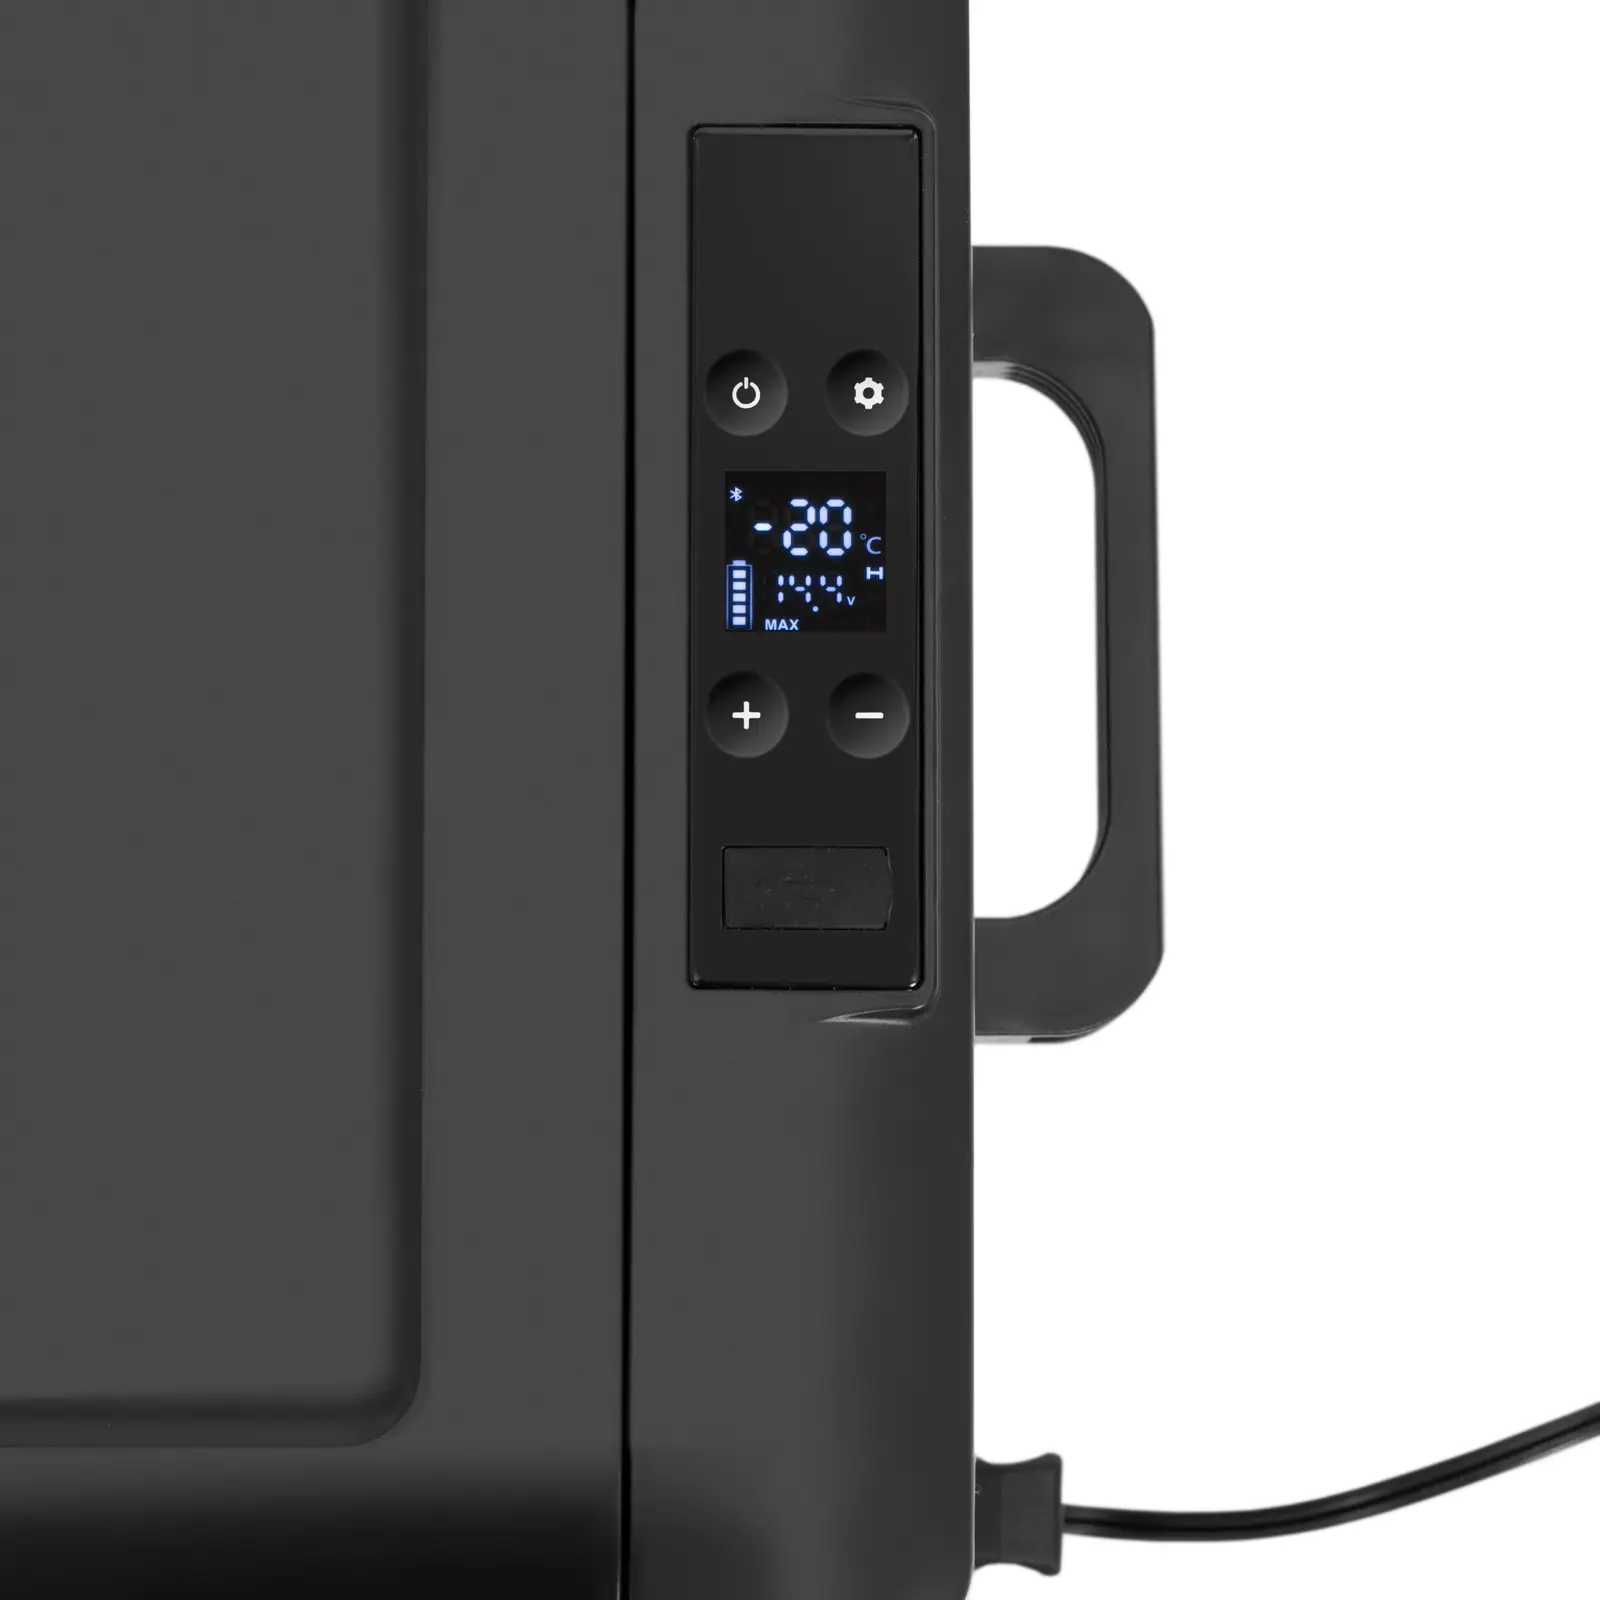 Køleskab til bil - fryseevne - 12/24 V (DC) /100 - 240 V (AC) - 30 l - LED-kontrolpanel - app